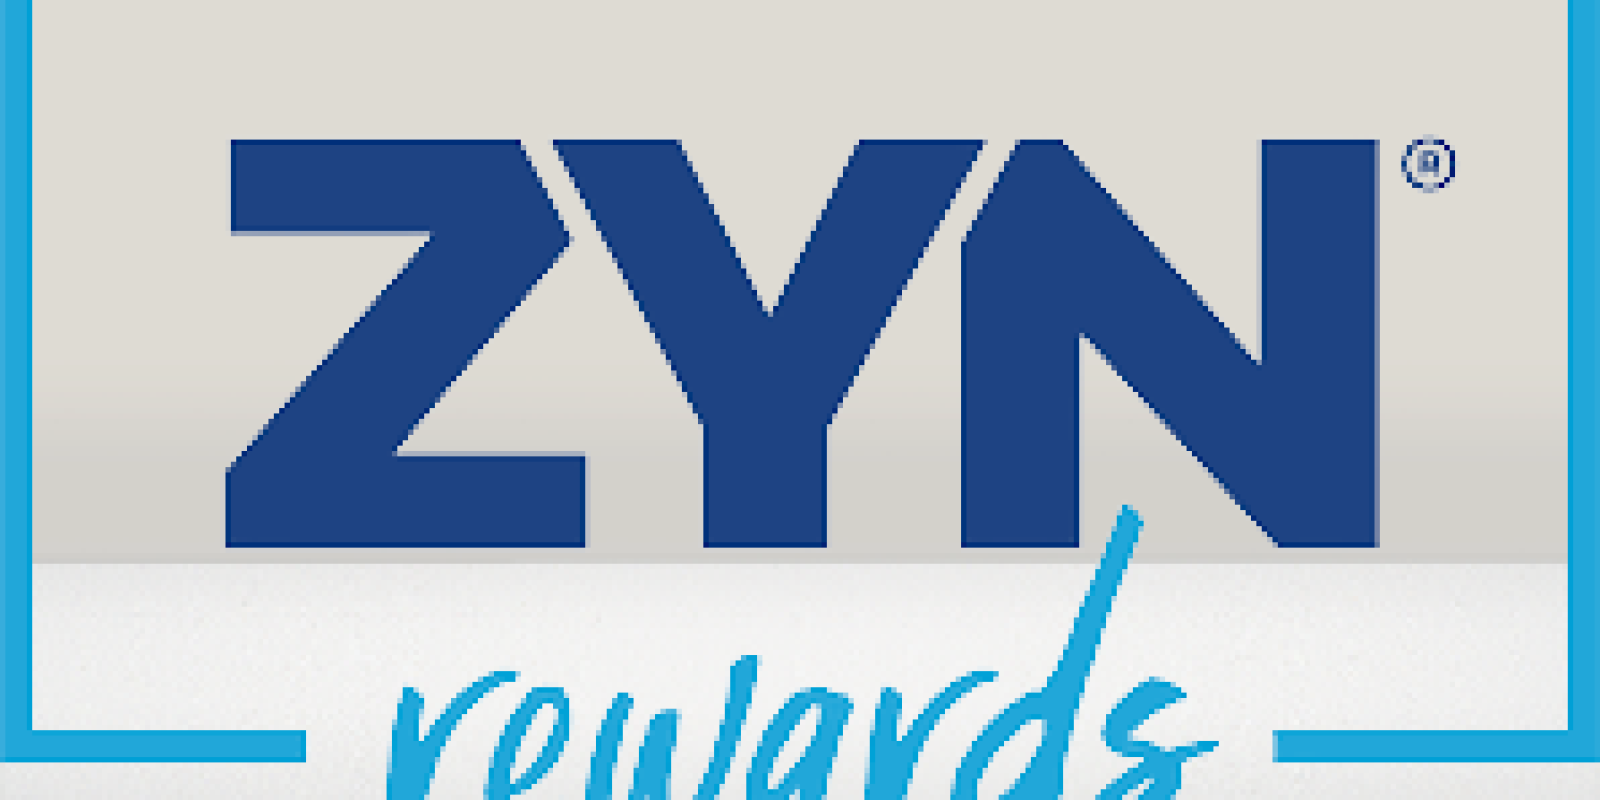 Zyn Rewards